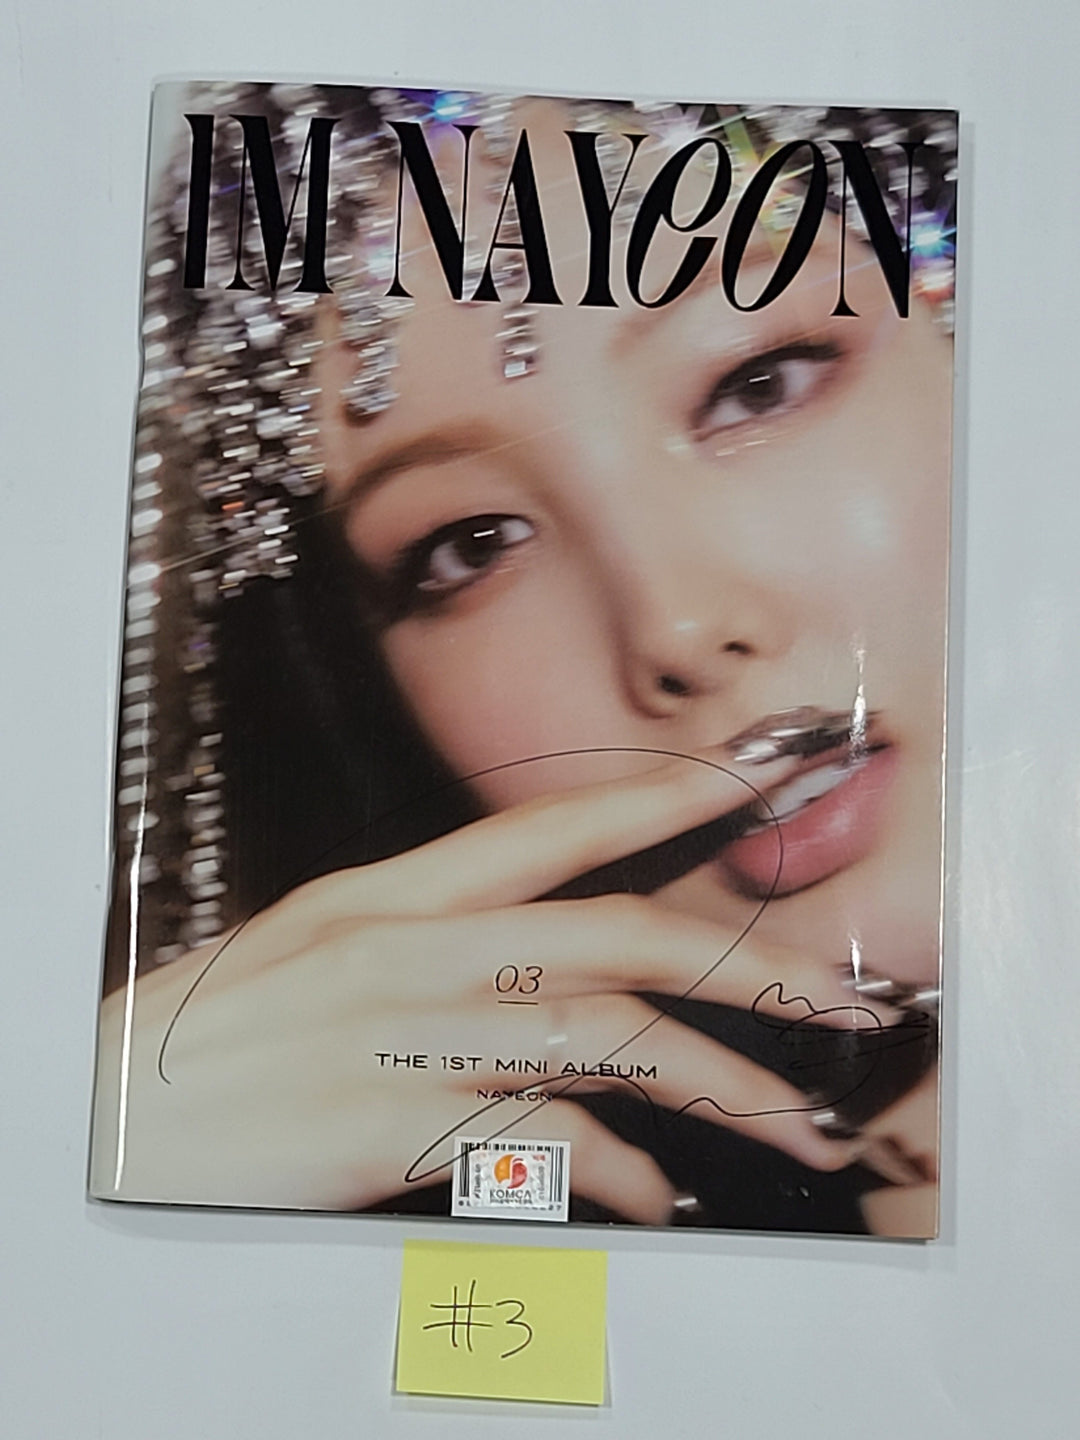 Nayeon "IM NAYEON" - Hand Autographed(Signed) Promo Album